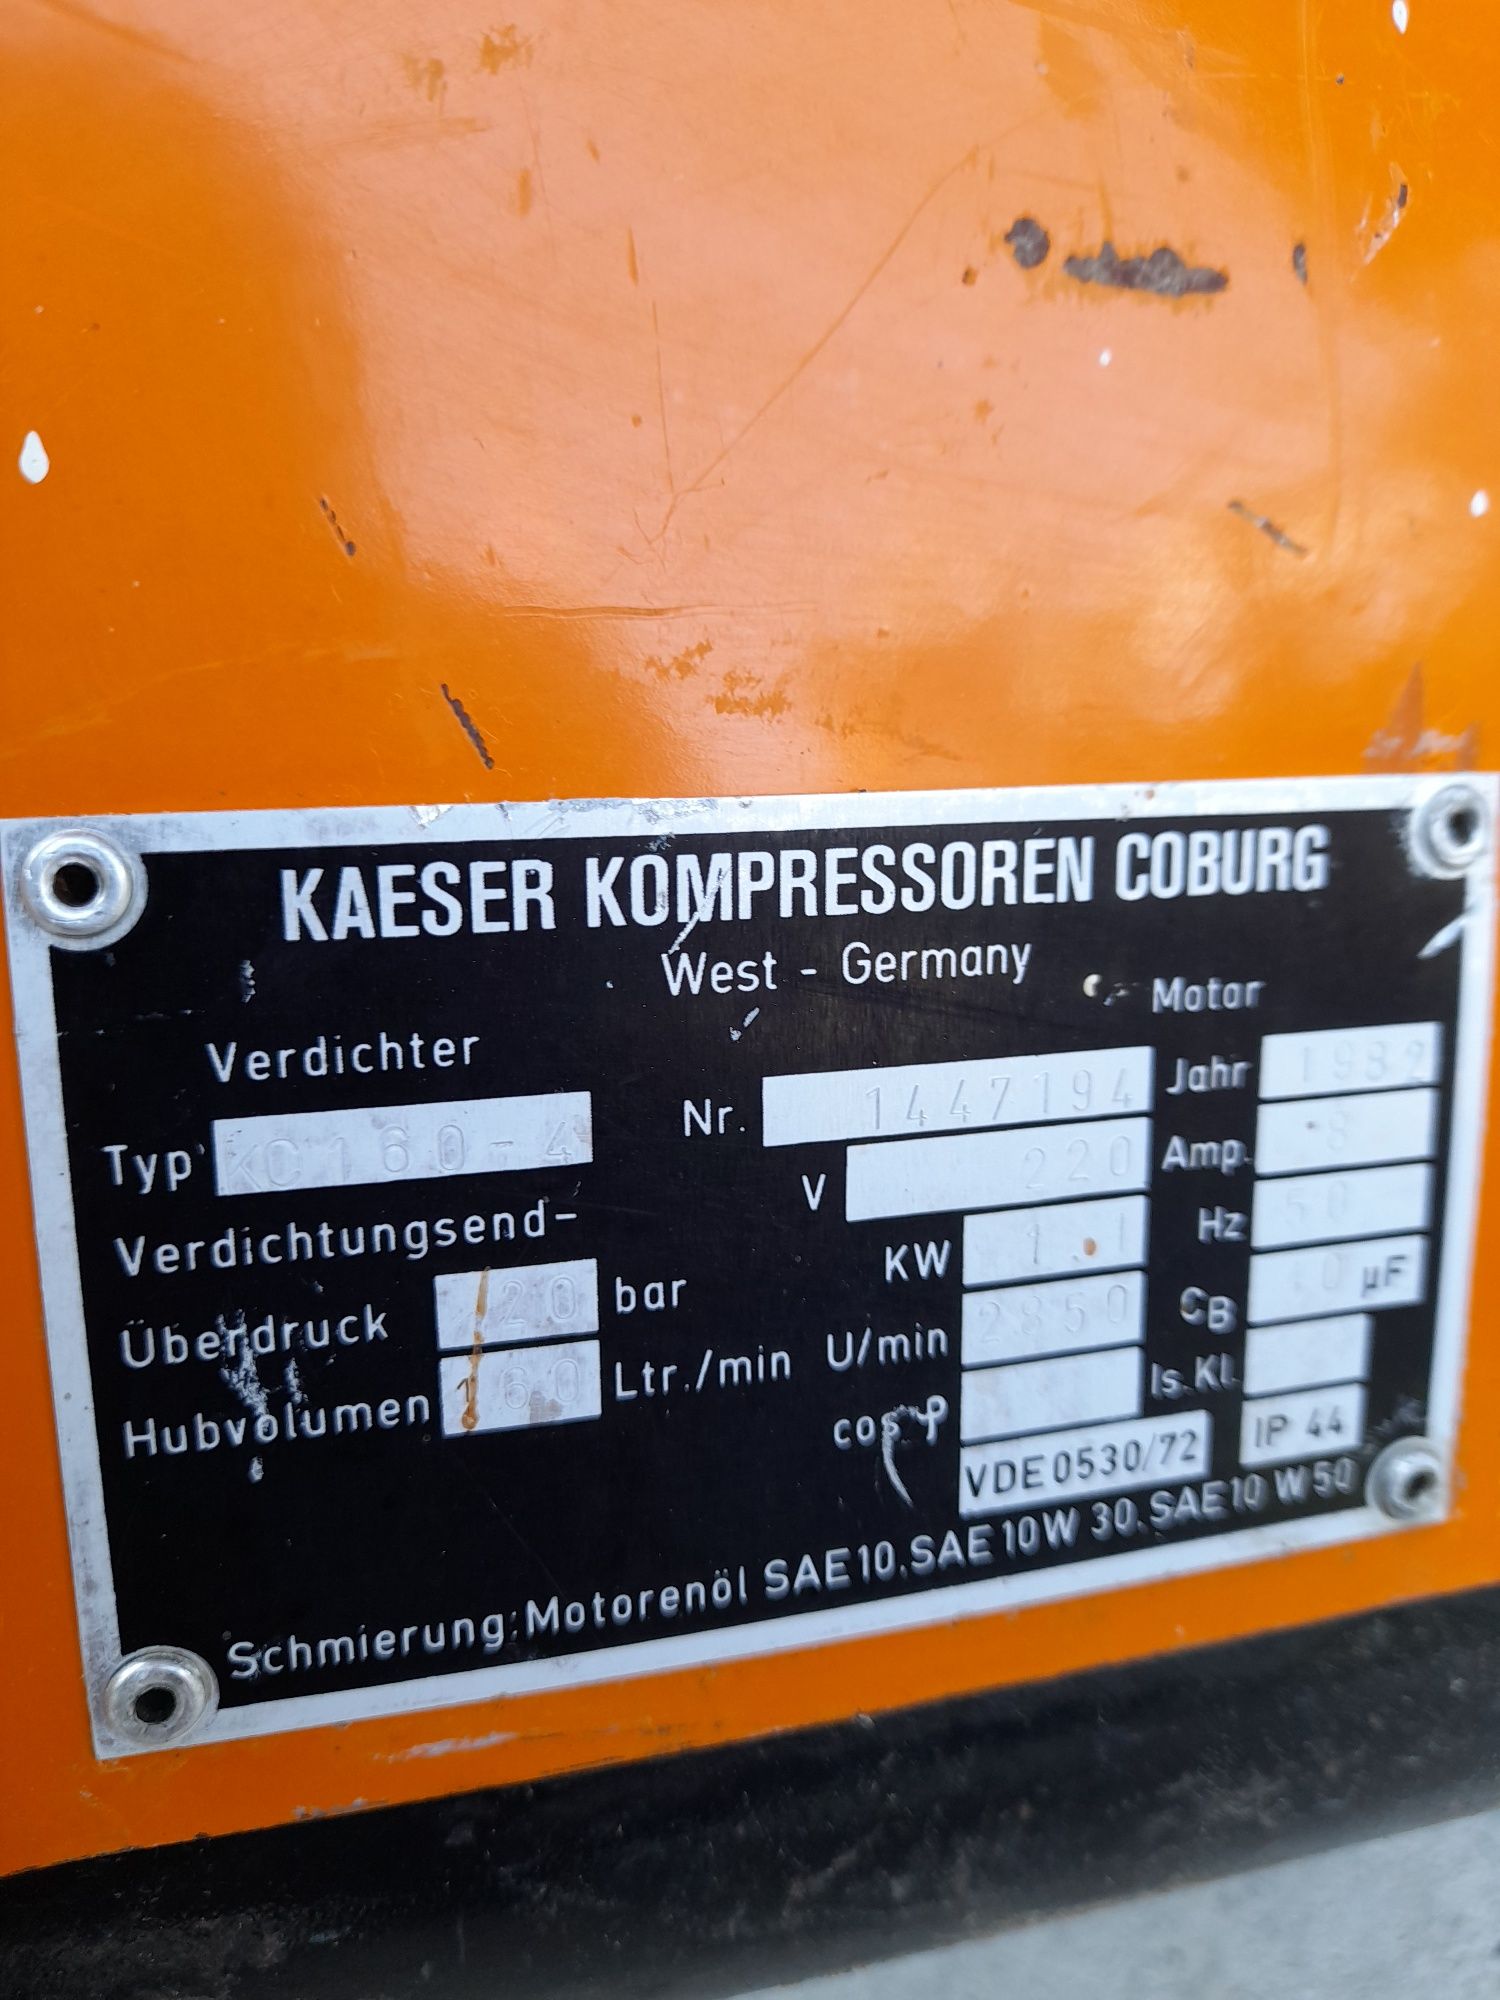 Compresor Kaeser Diamant 160 20 bari